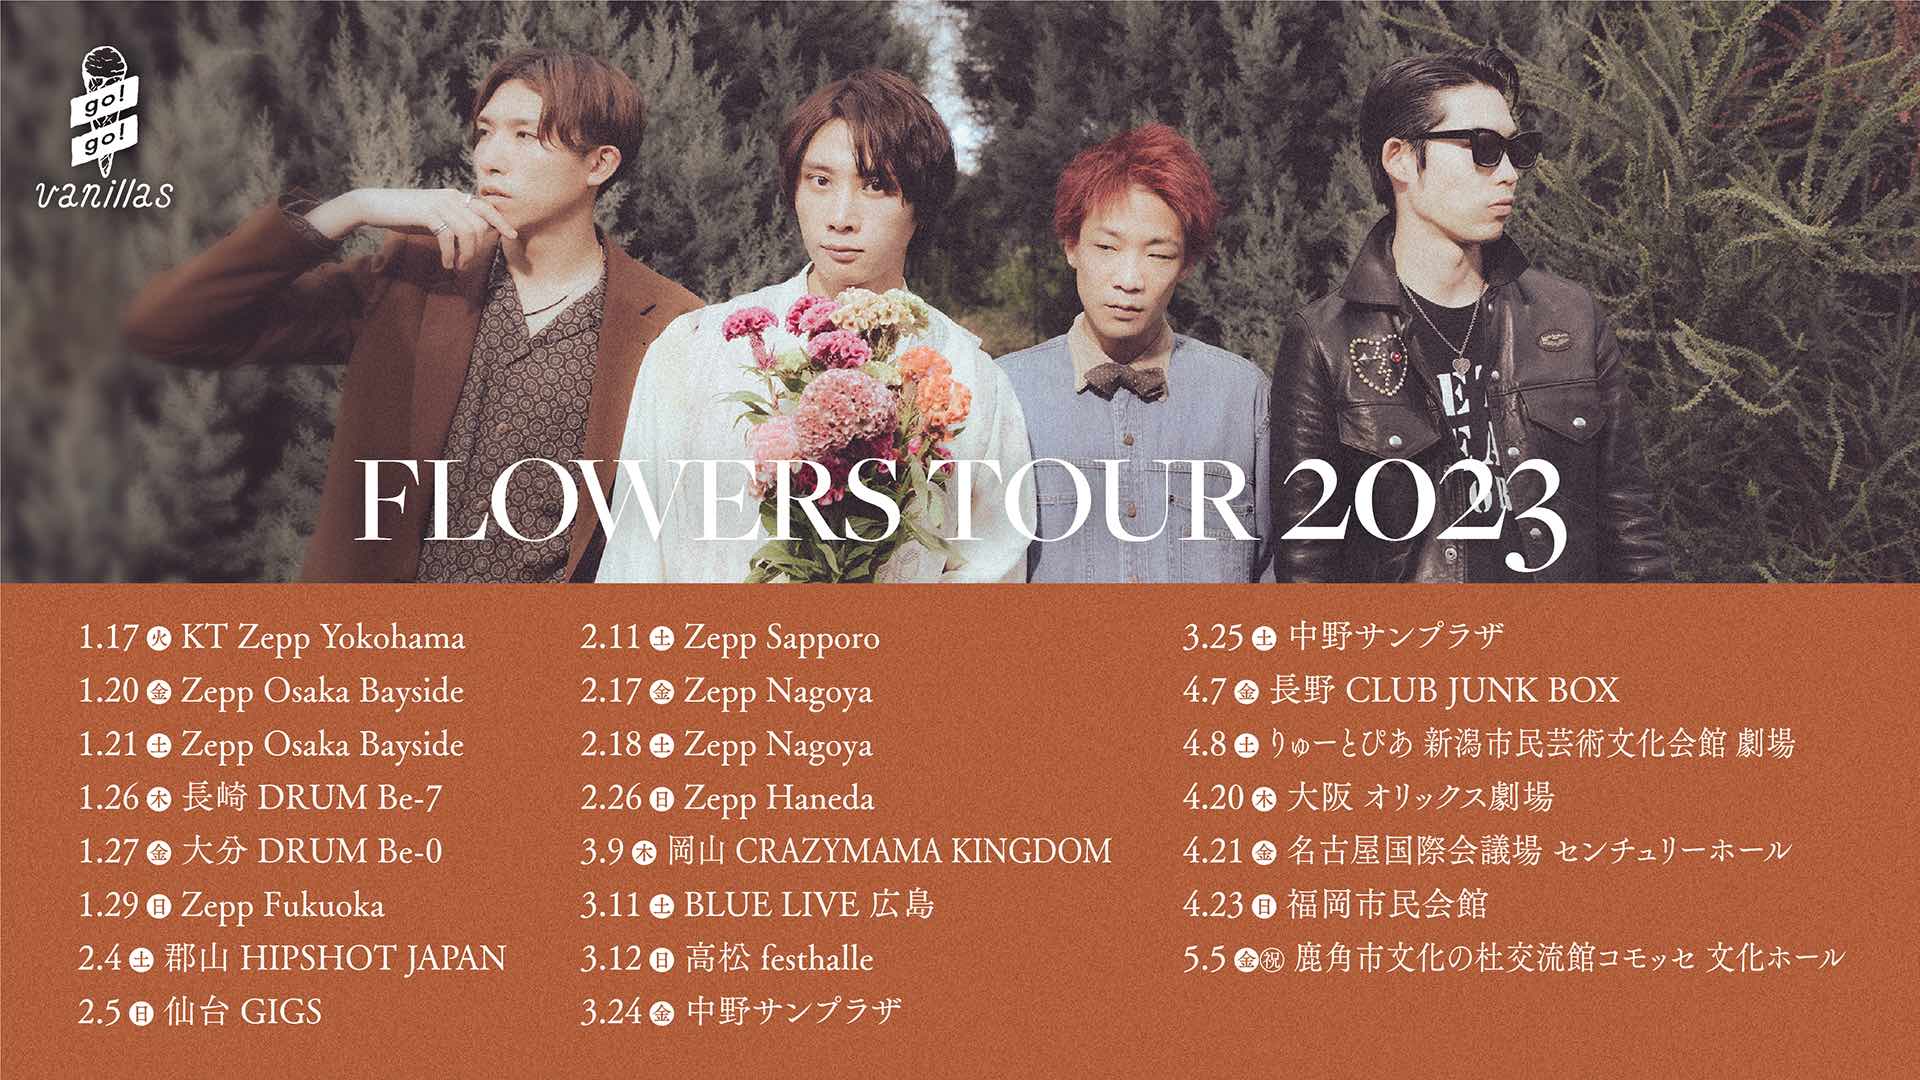 明日12/18(日)12:00より、「FLOWERS」TOUR 2023 ライブハウス公演 ...